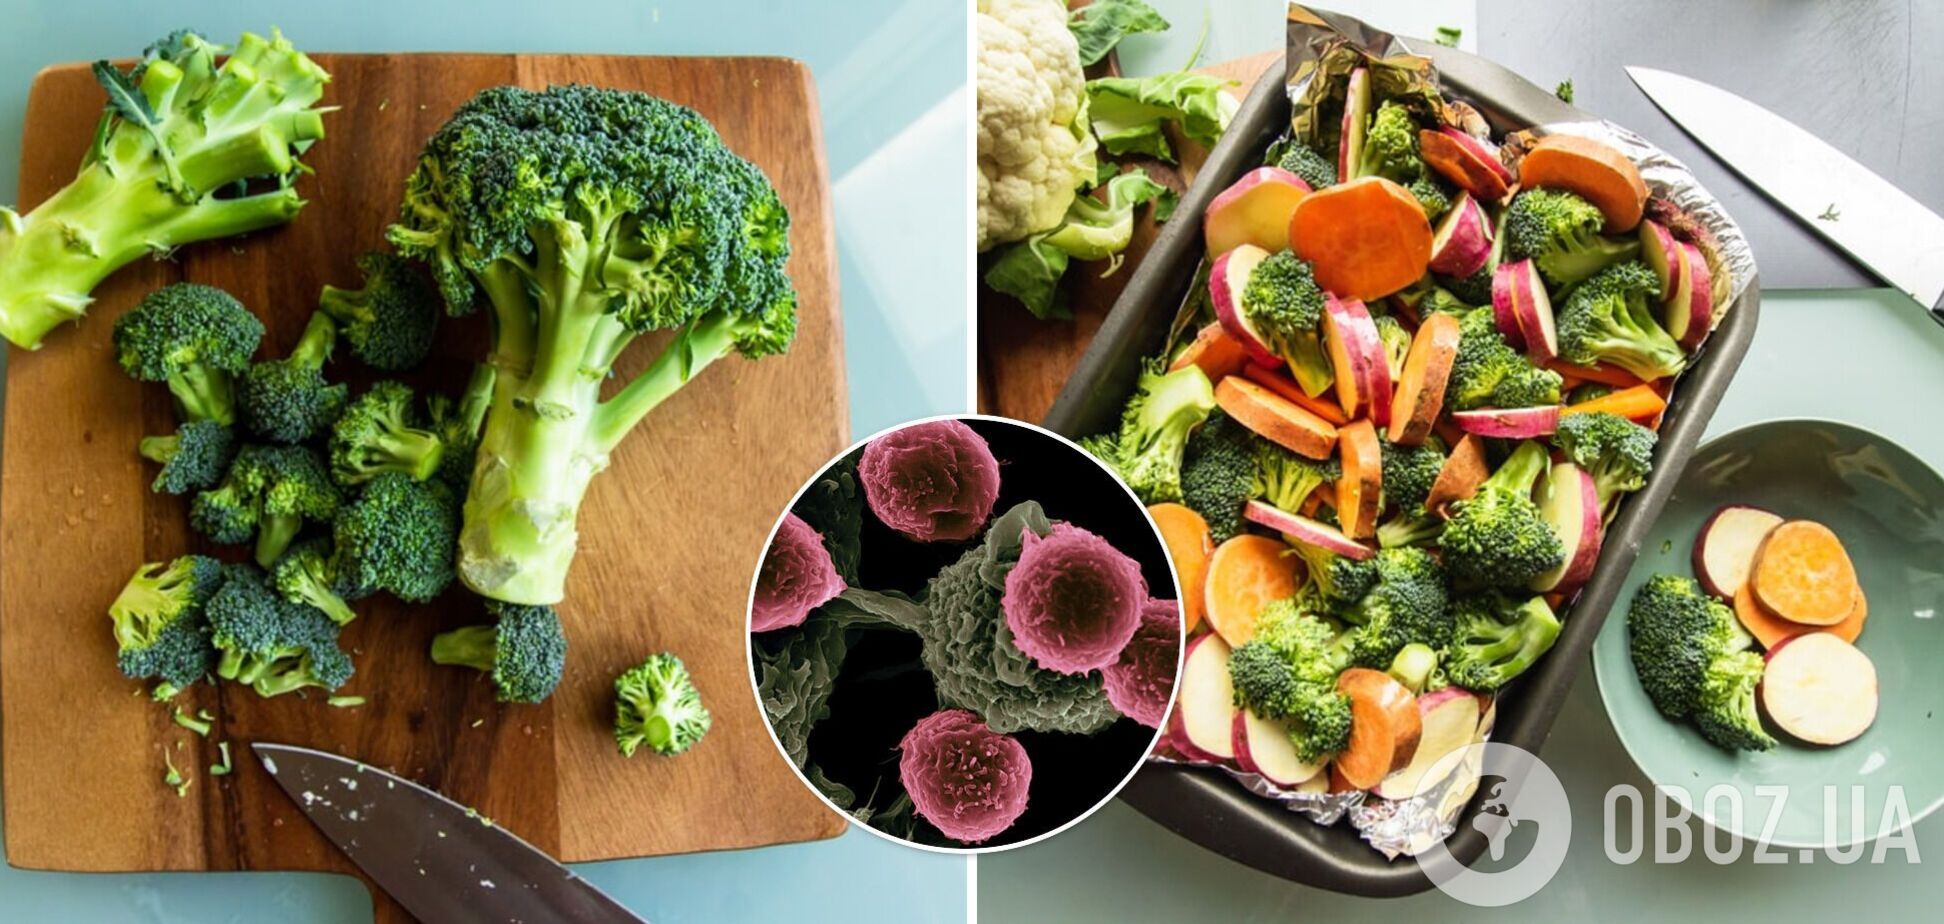 Ученые рассказали, употребление каких овощей может снизить риск развития рака